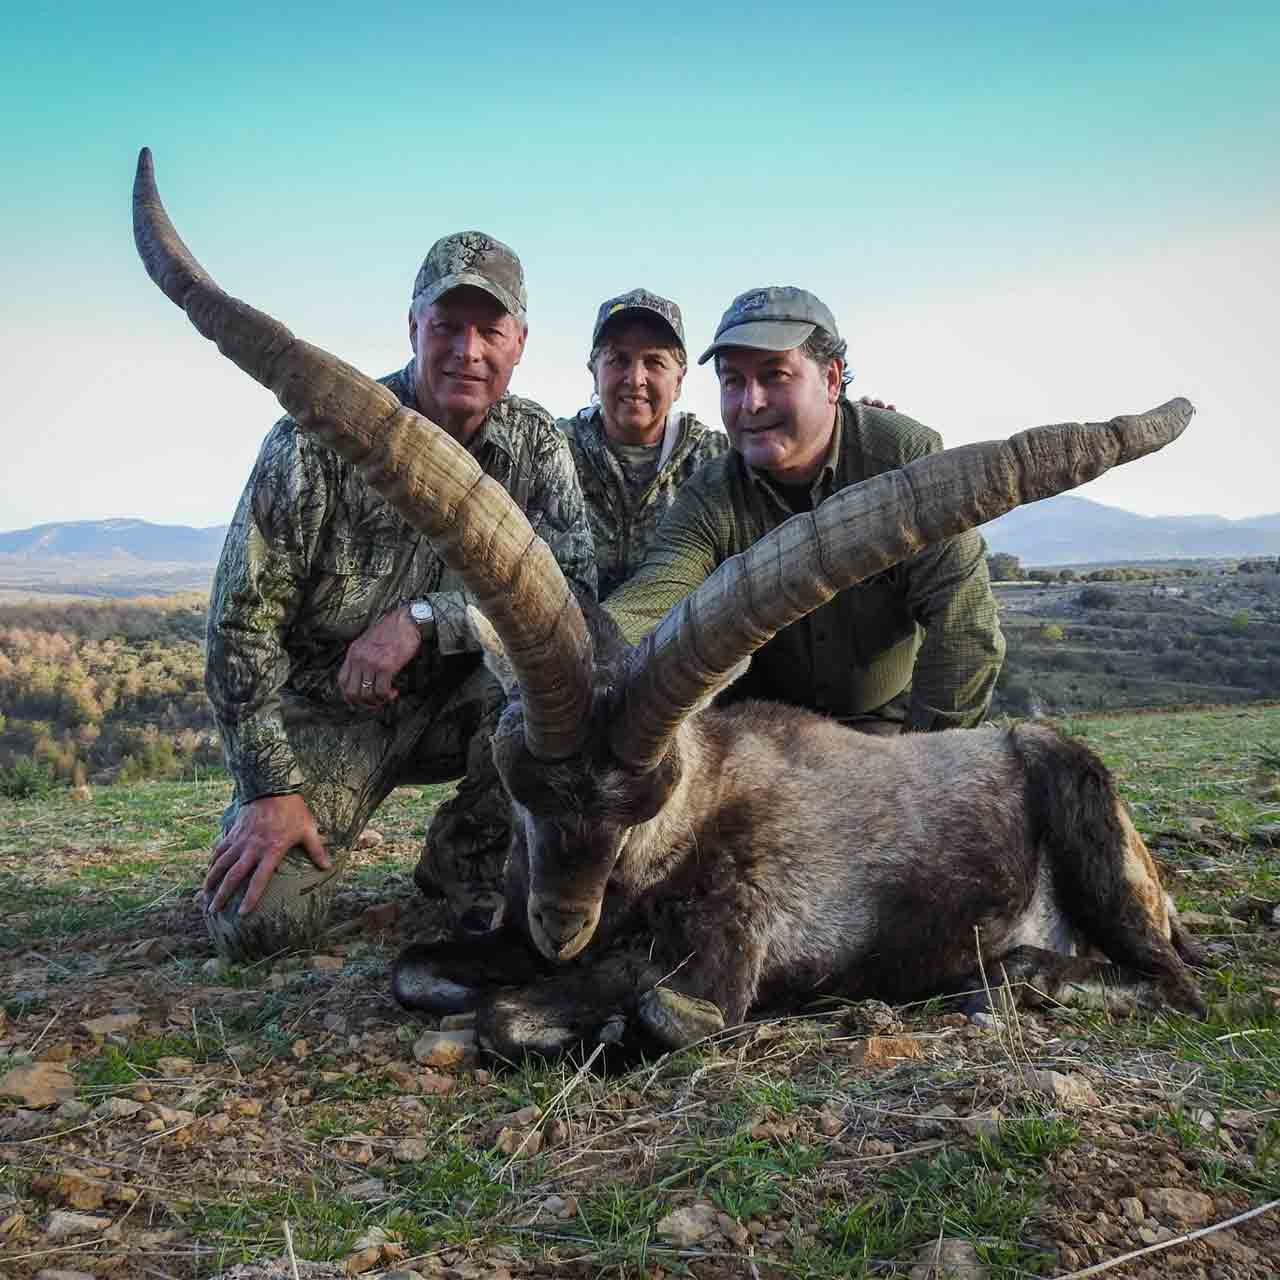 Beceite ibex hunts in Spain